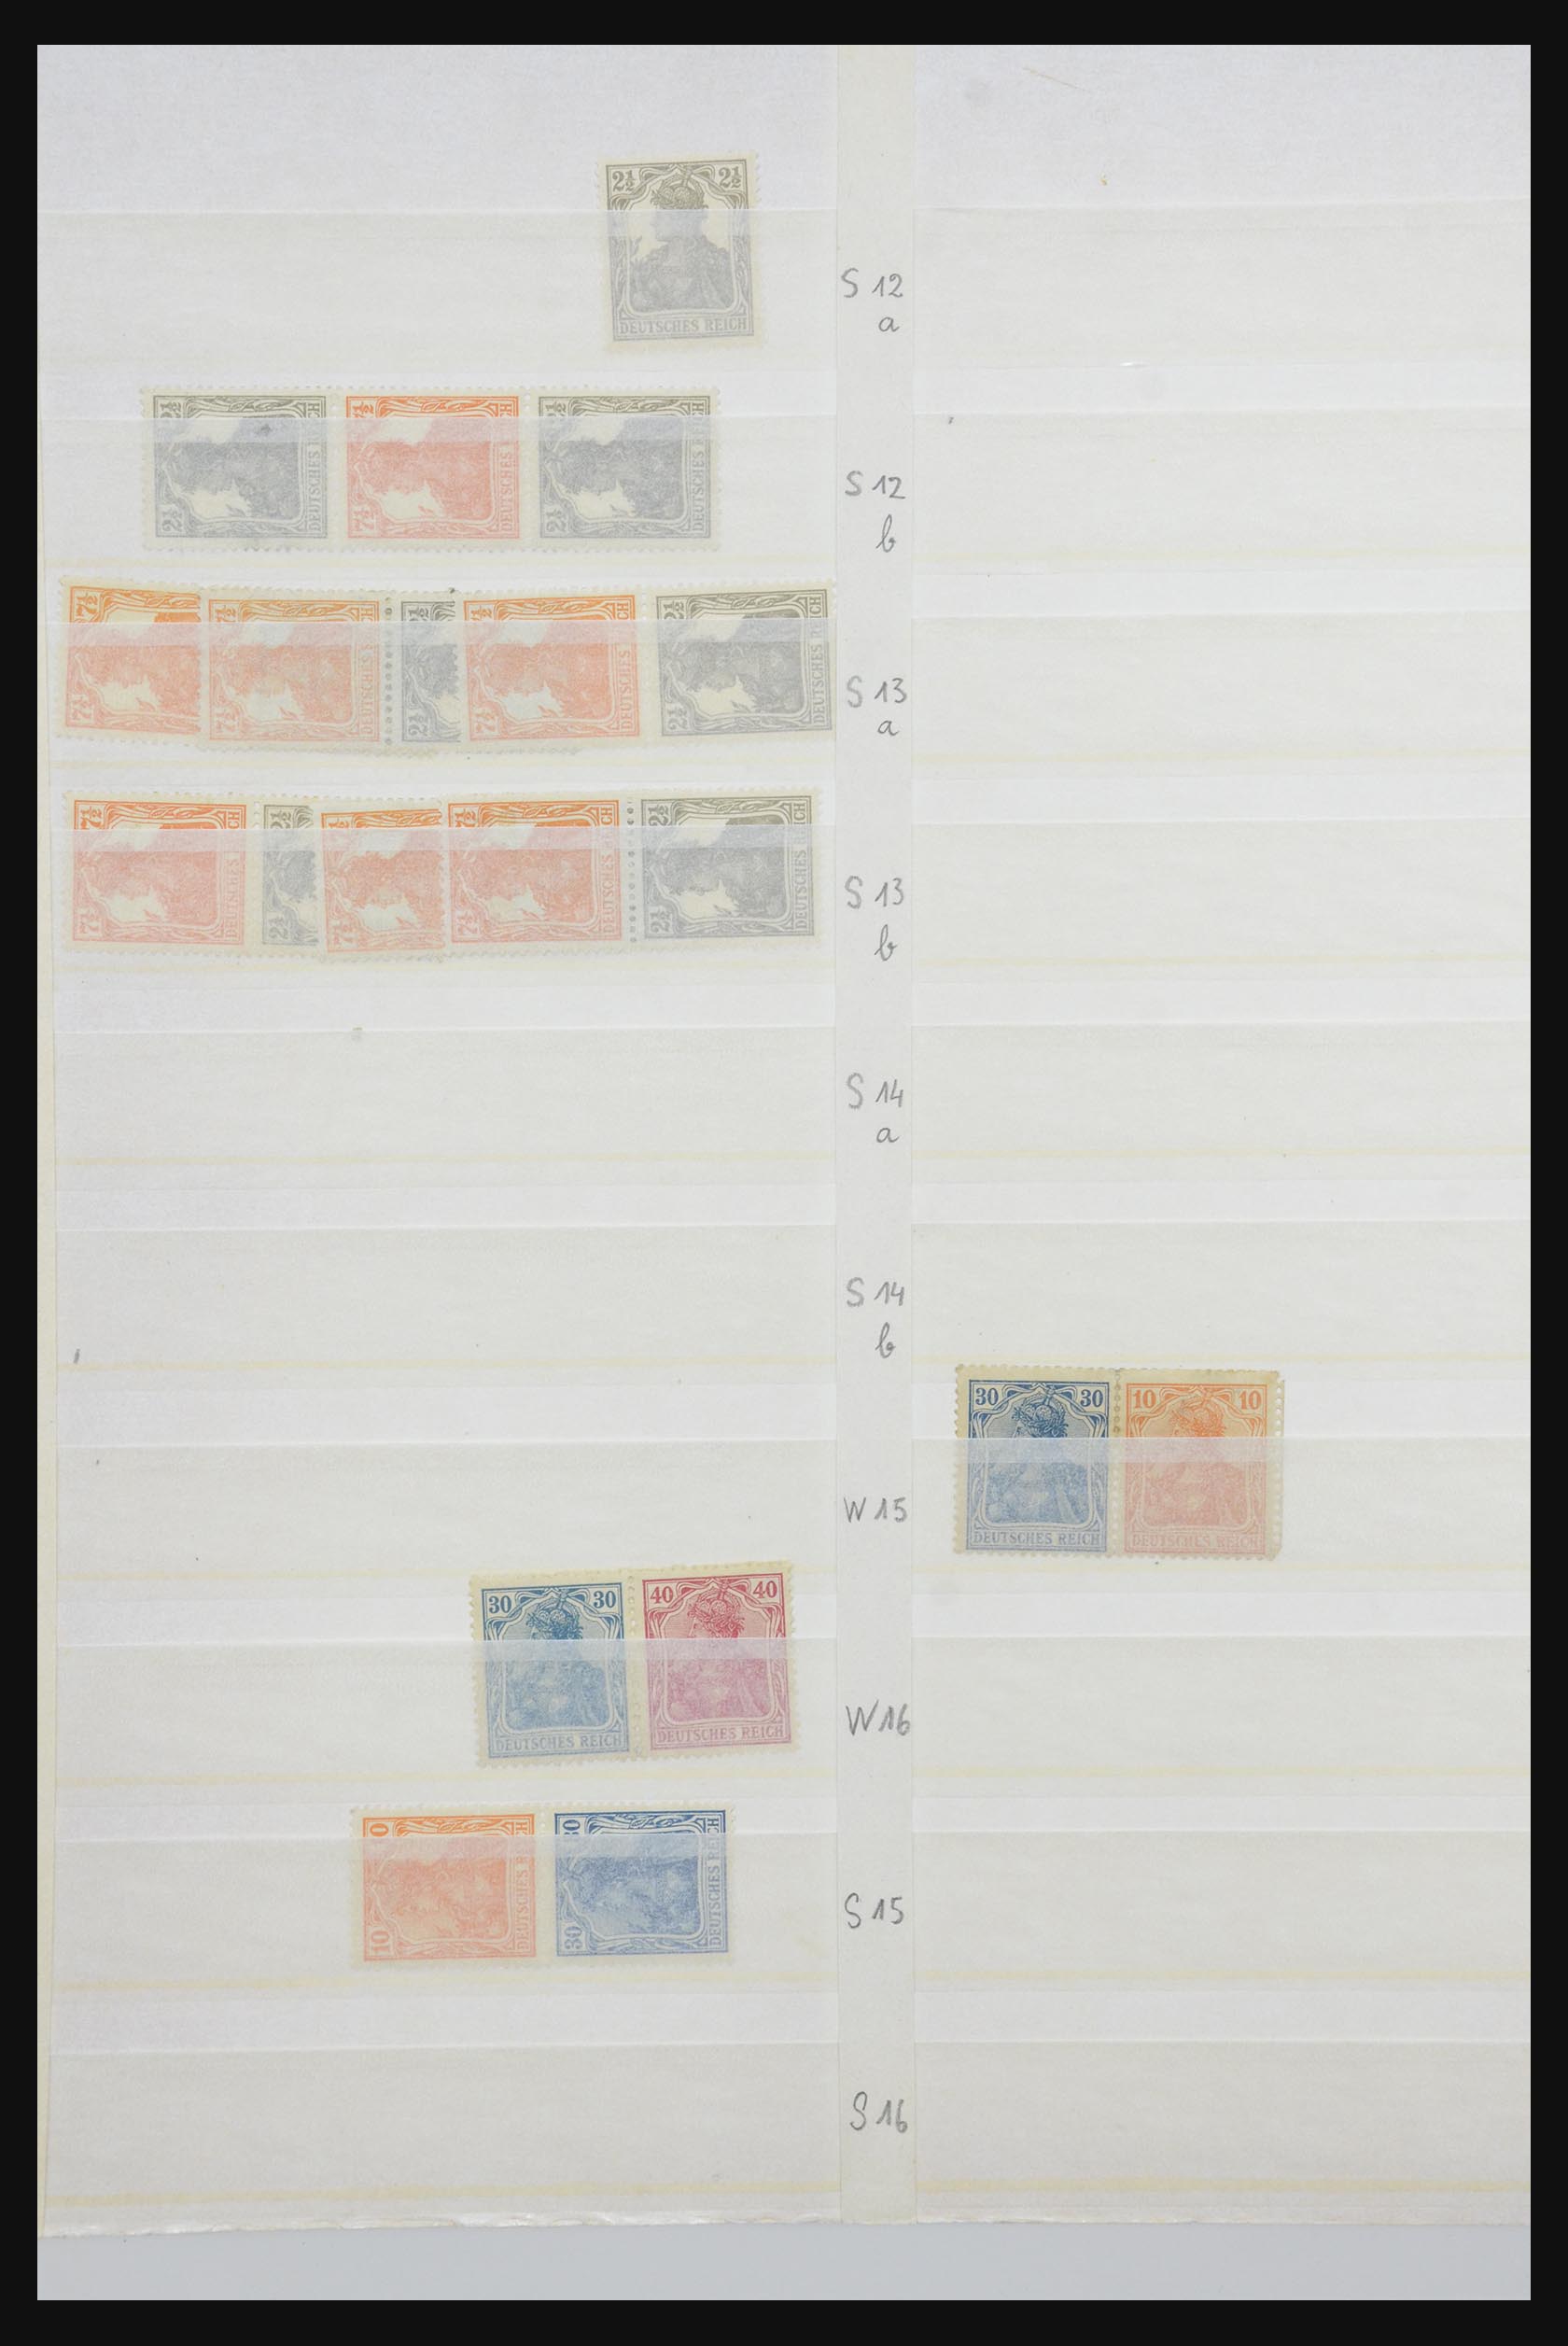 31884 004 - 31884 Duitsland combinaties 1920-1980.